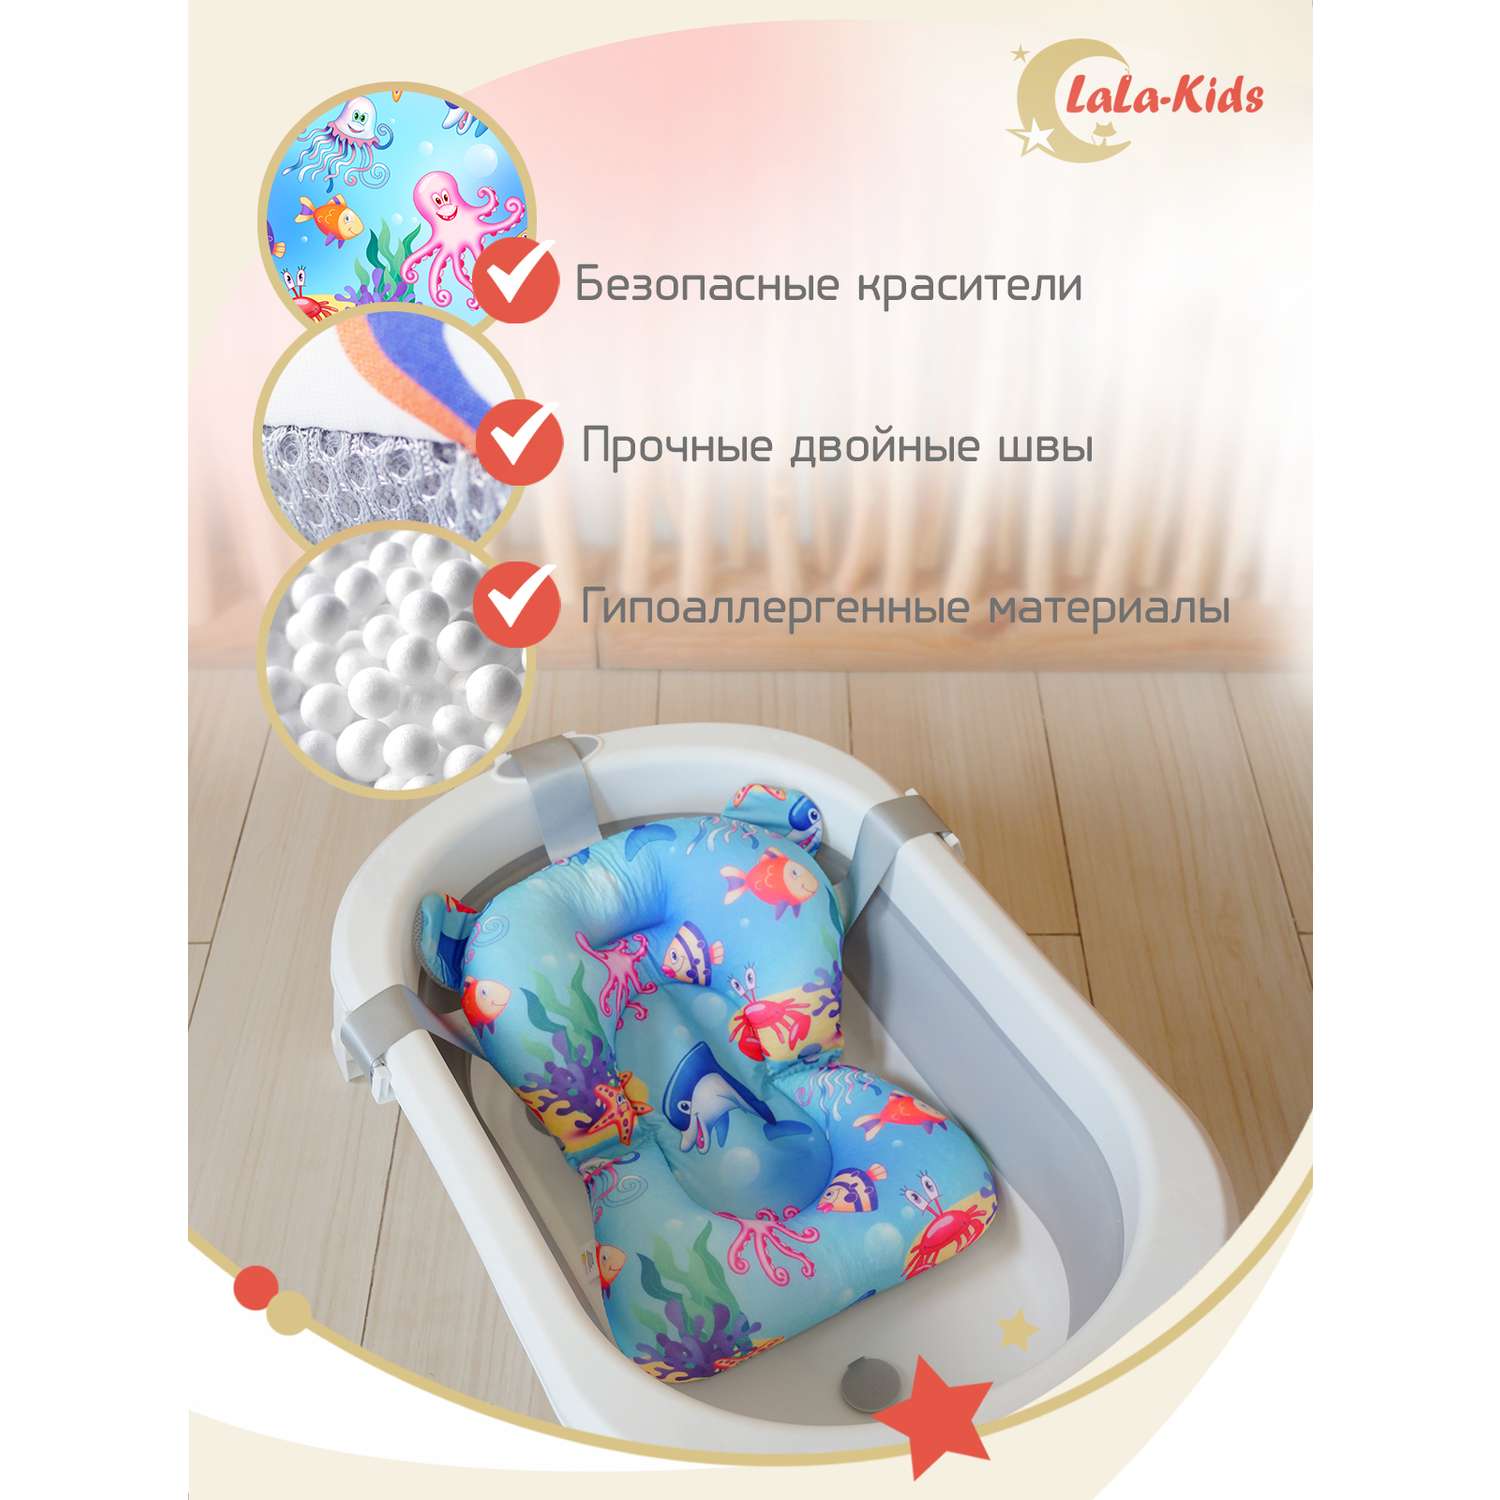 Детская ванночка LaLa-Kids складная для купания новорожденных с термометром и матрасиком в комплекте - фото 15